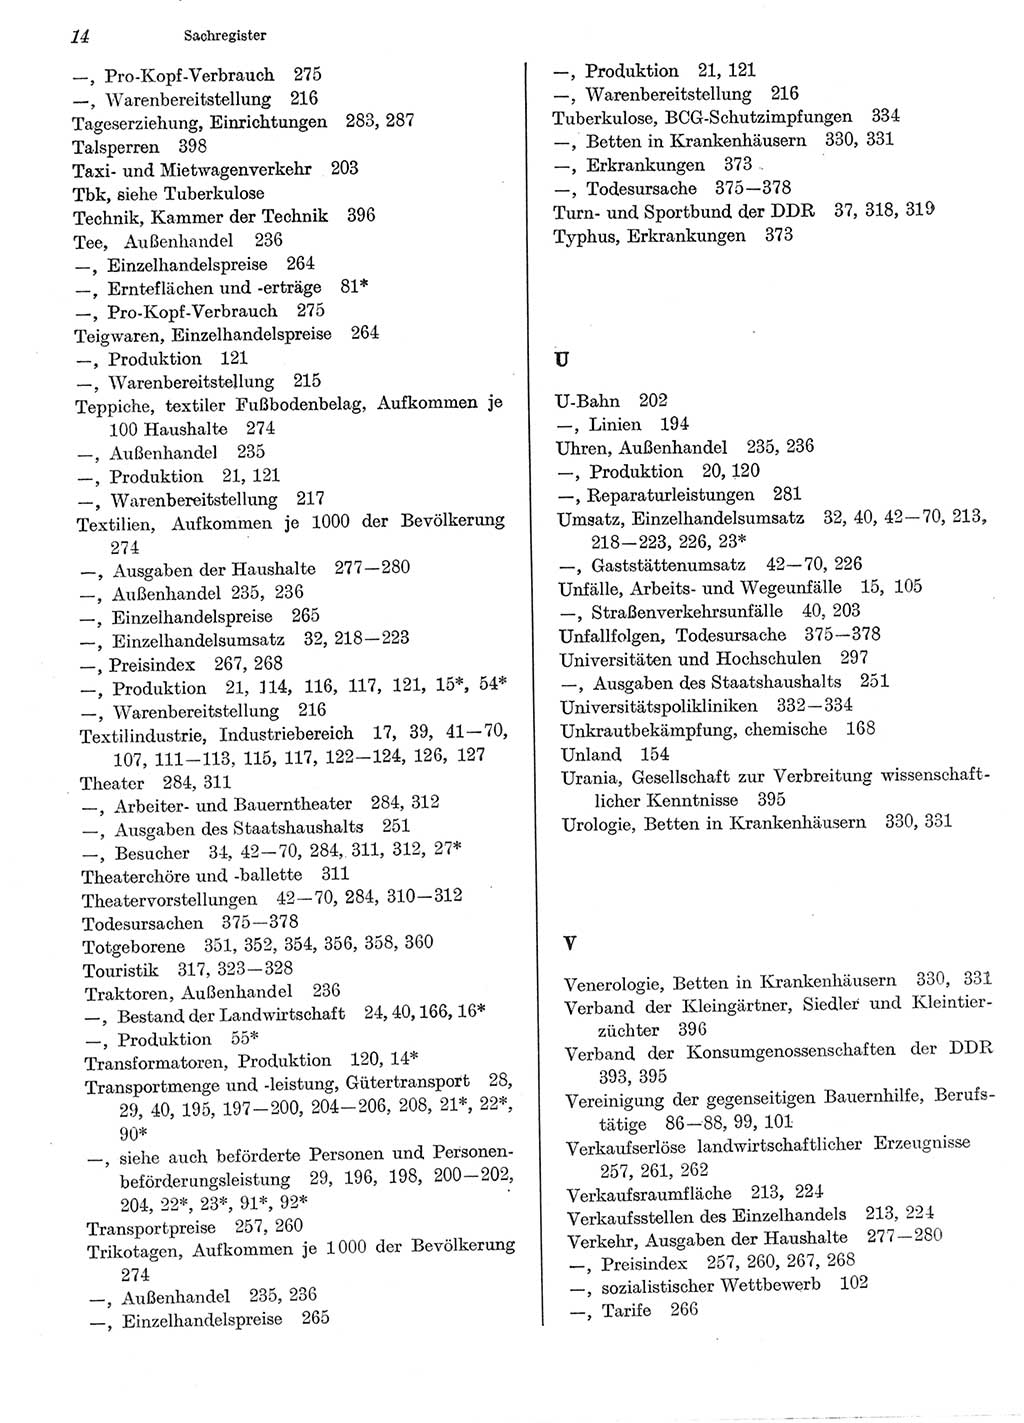 Statistisches Jahrbuch der Deutschen Demokratischen Republik (DDR) 1979, Seite 14 (Stat. Jb. DDR 1979, S. 14)